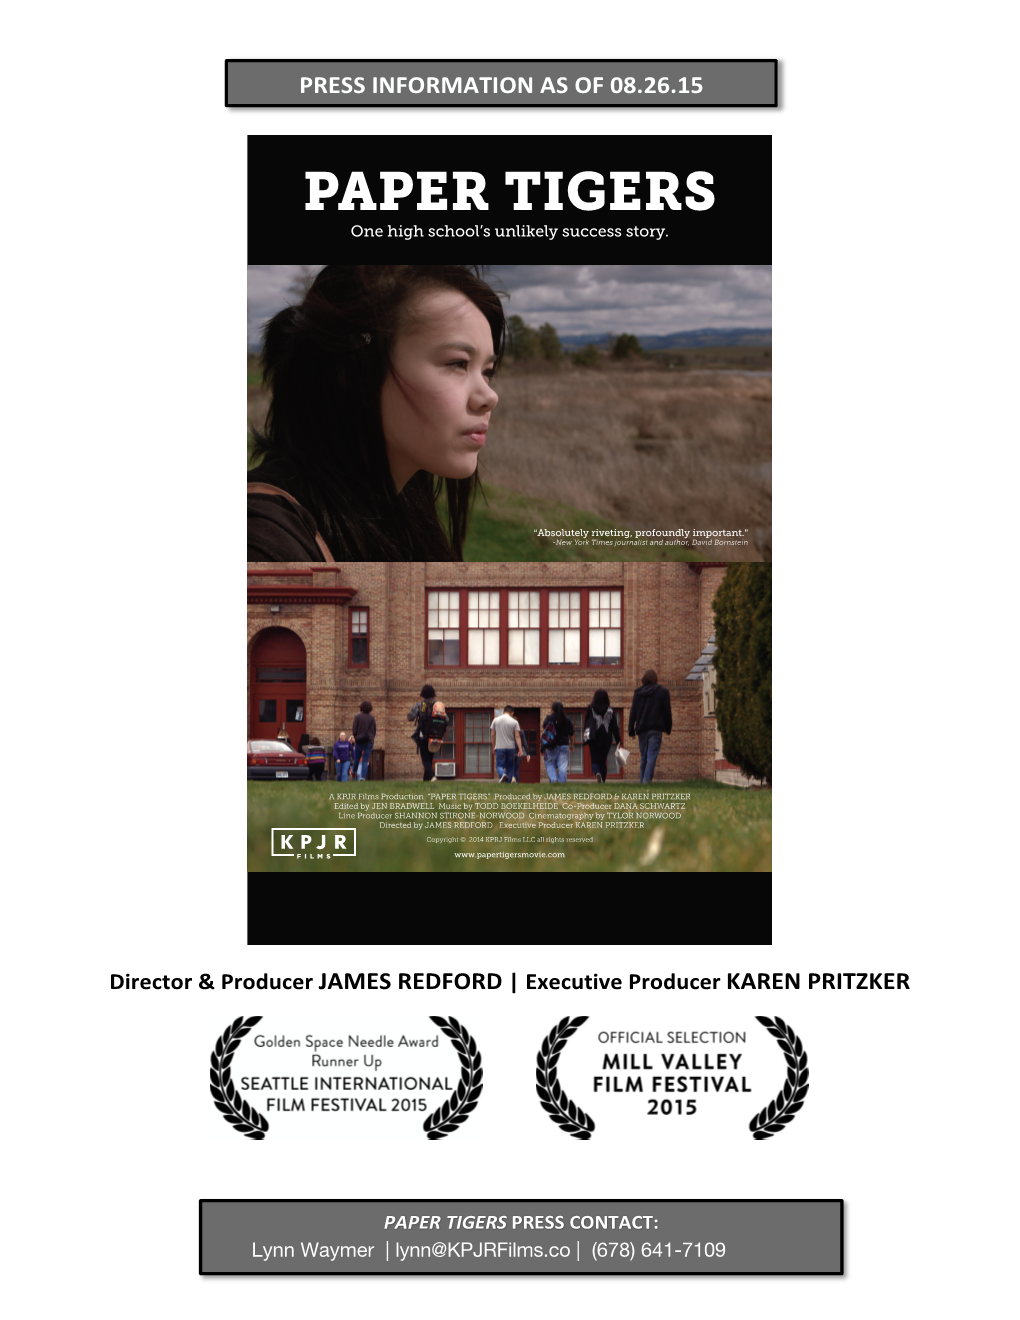 Paper Tigers Press Kit V150826b